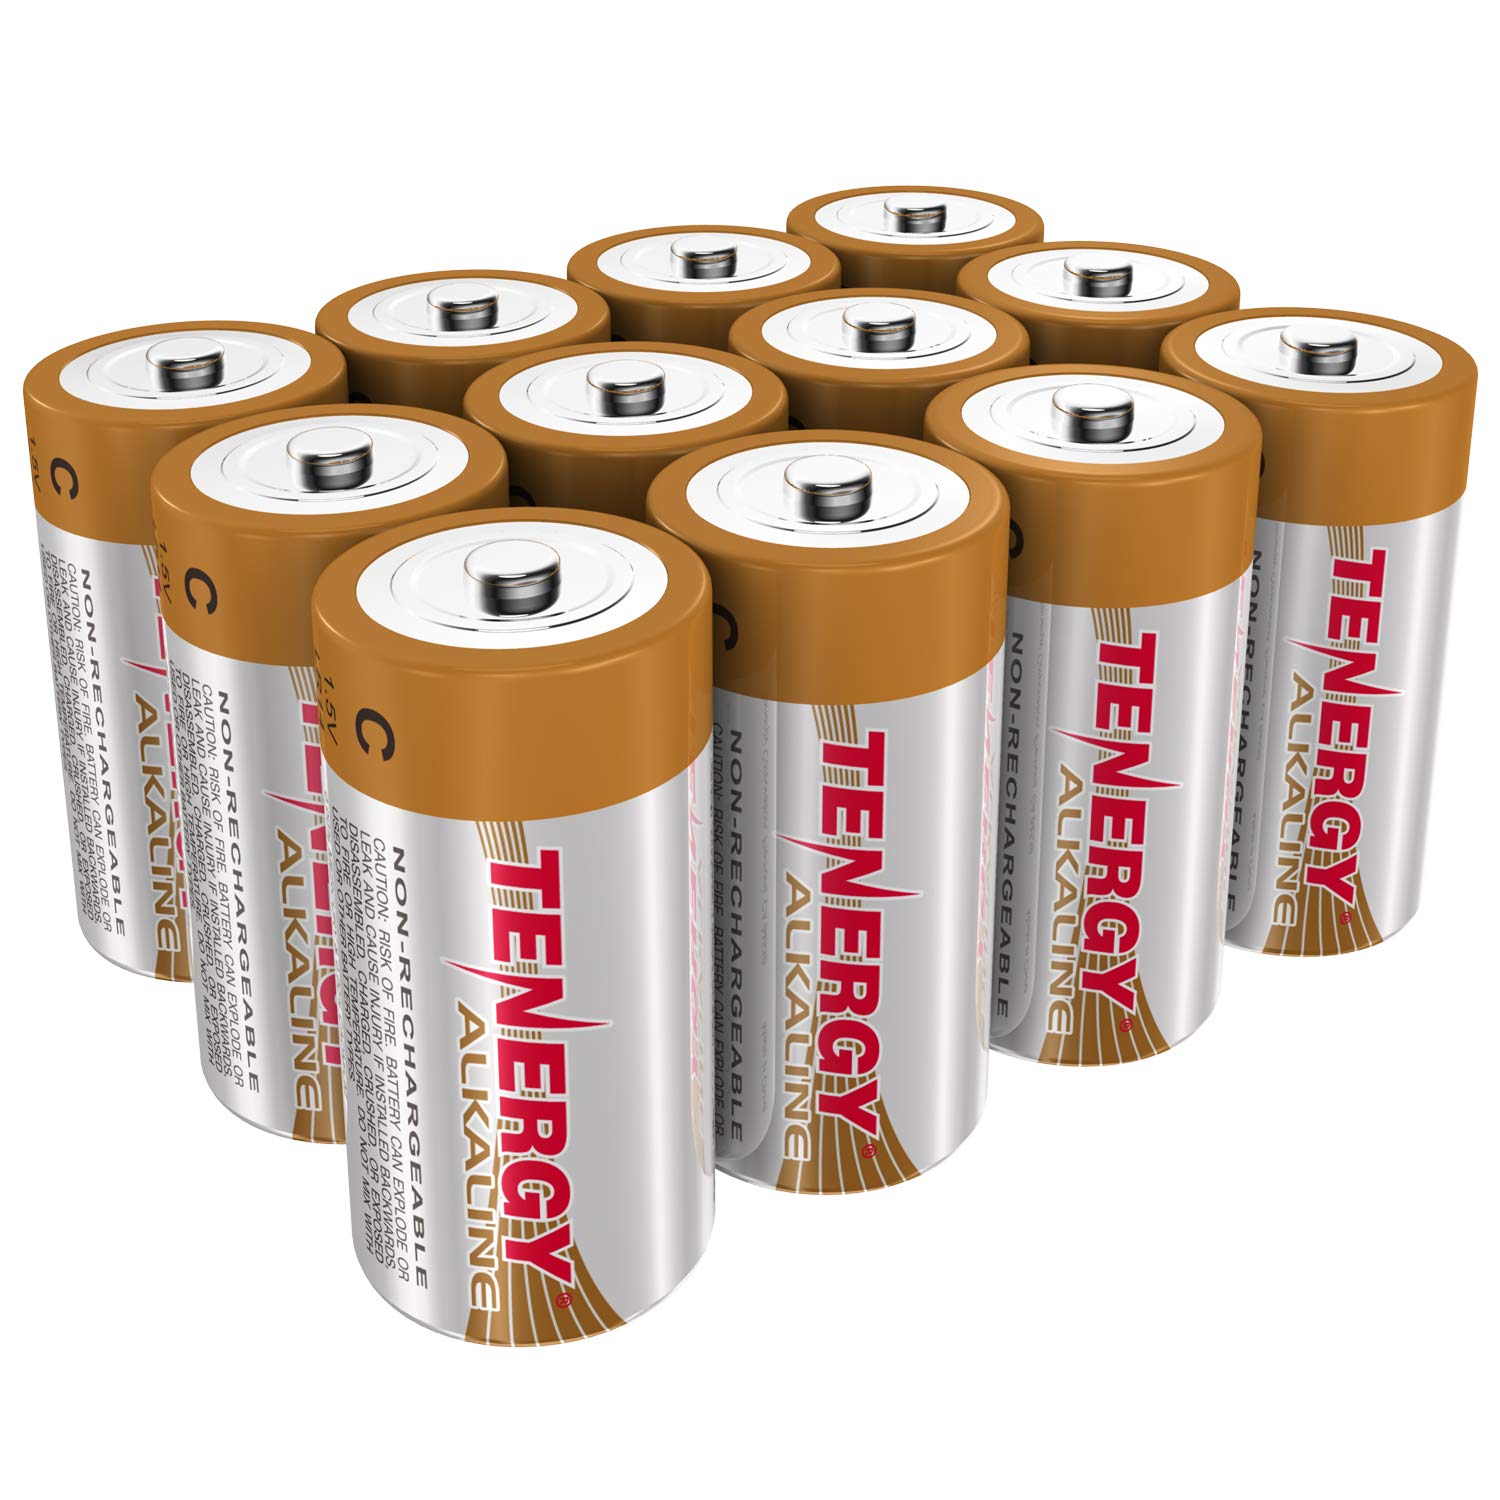 Box: 144pcs Tenergy C Size (LR14) Alkaline Batteries